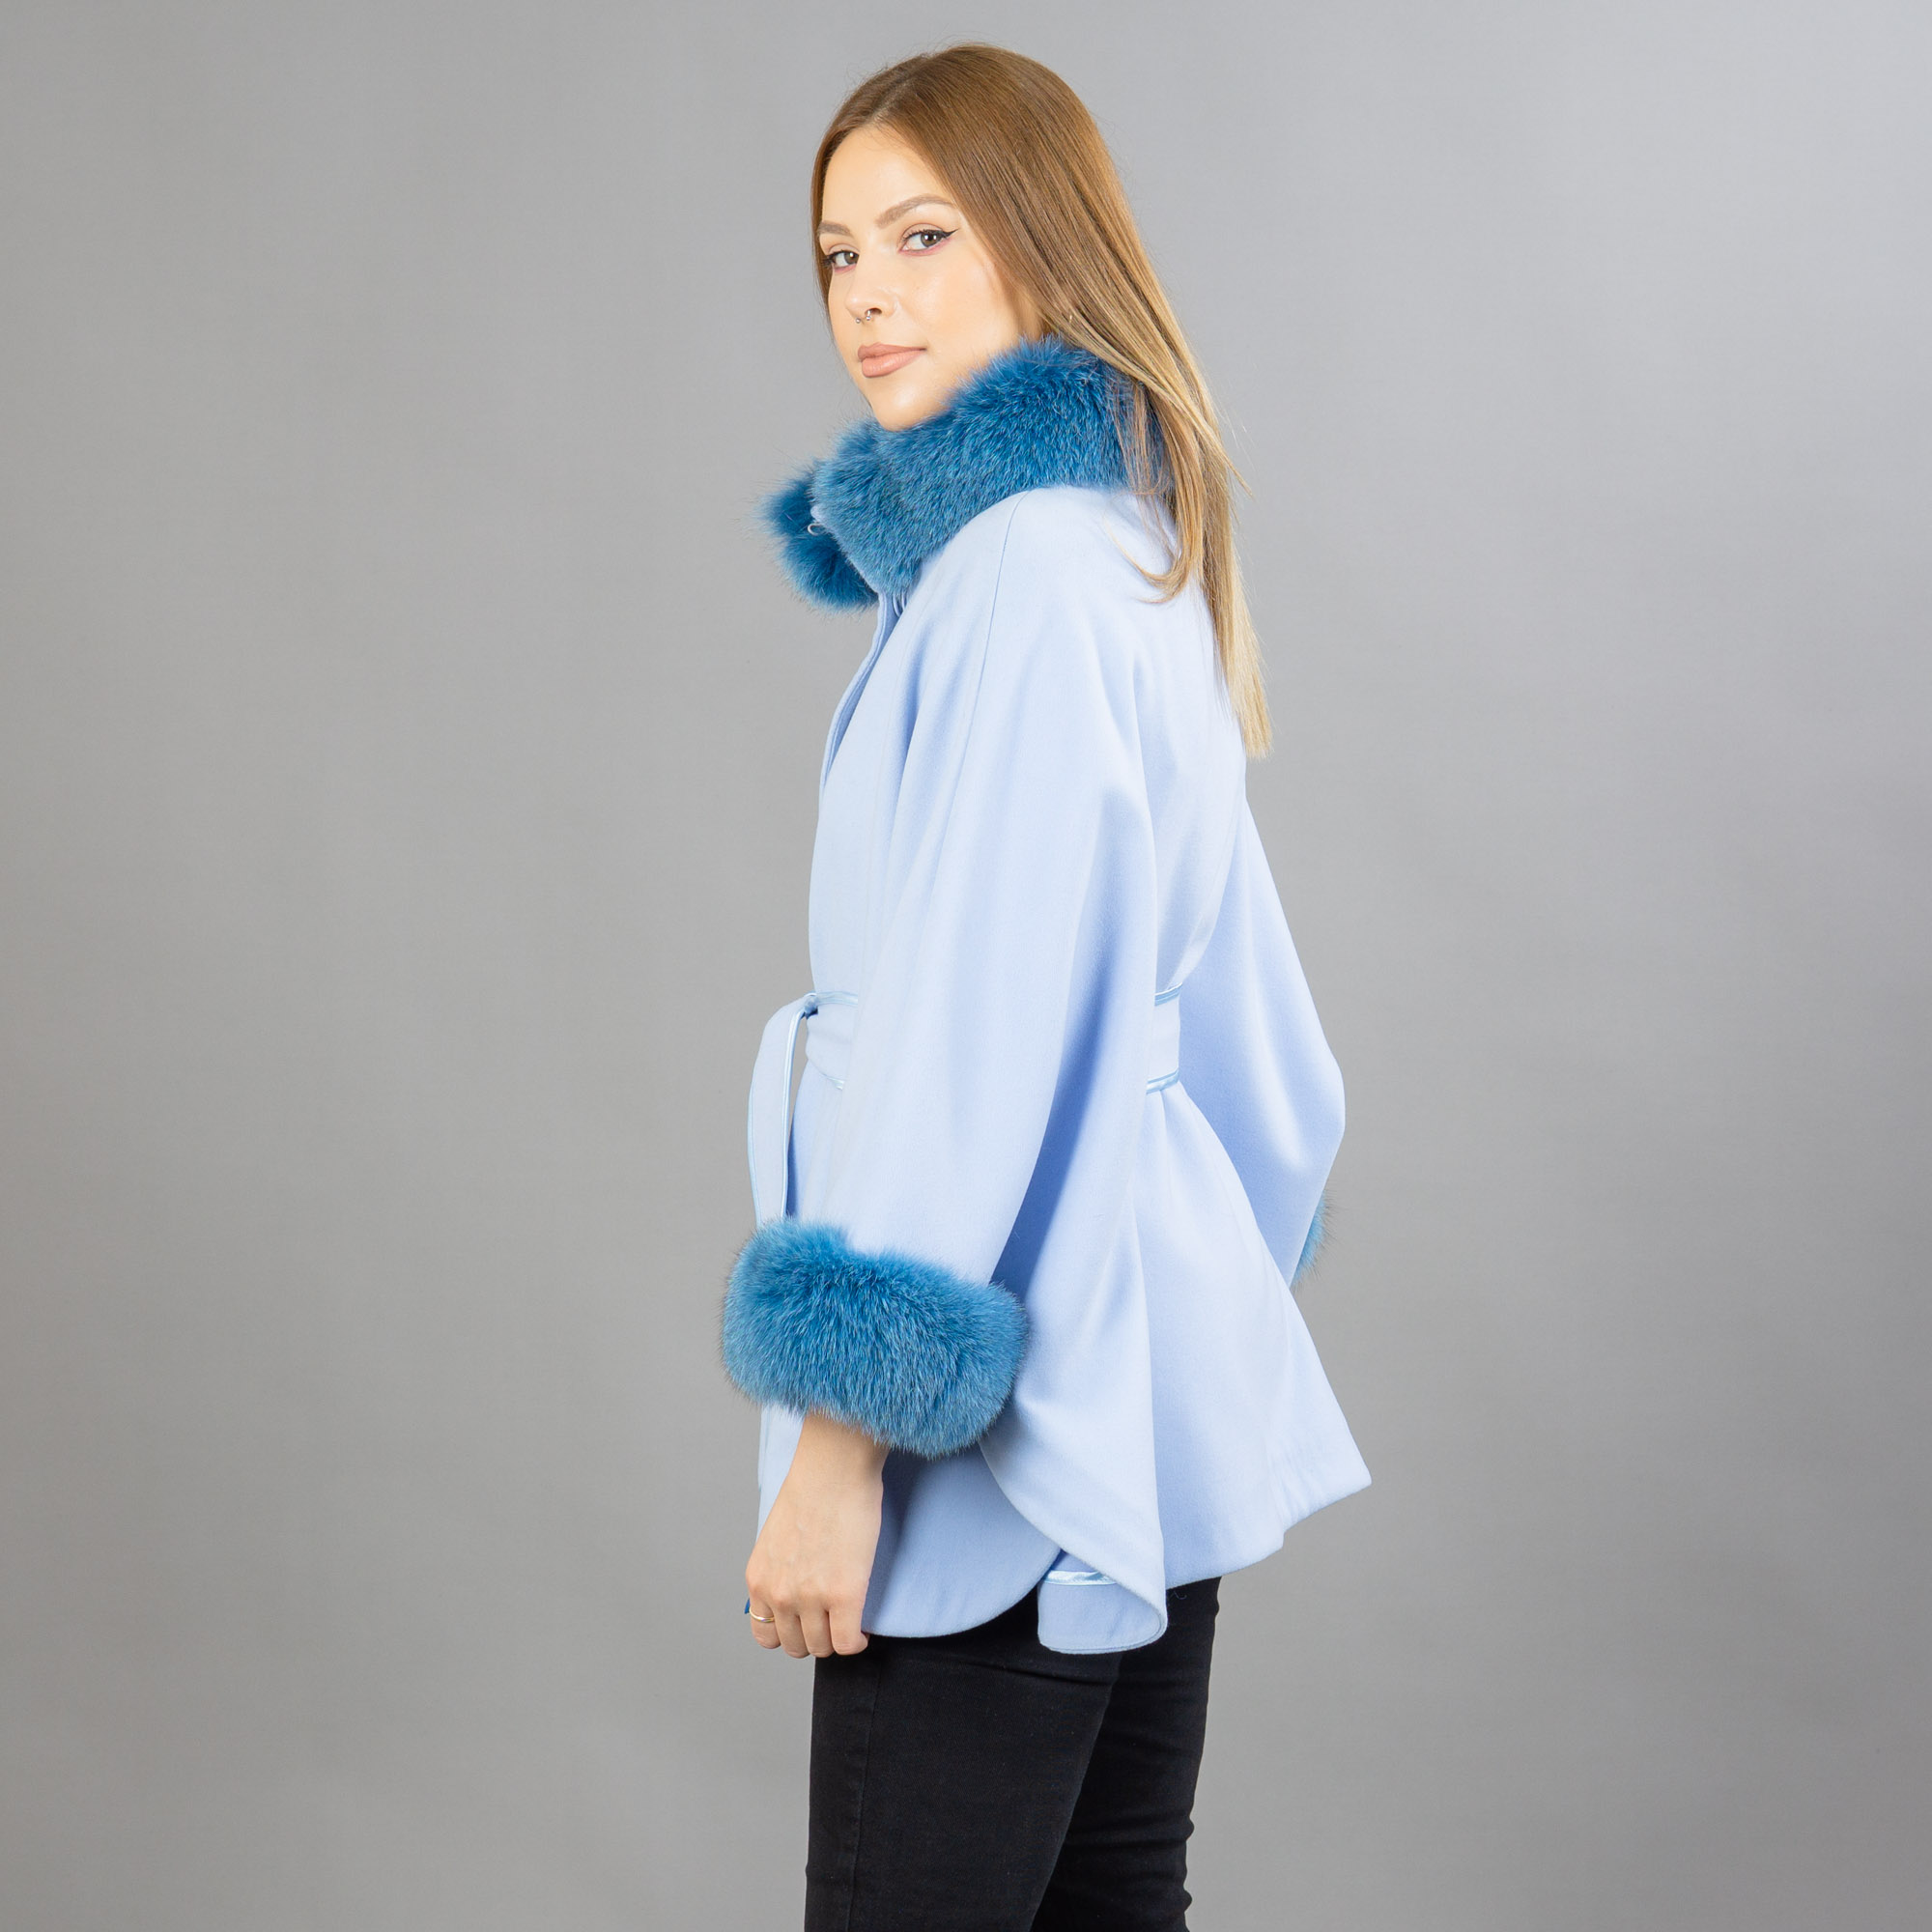 Blue cashmere cape with fox fur details